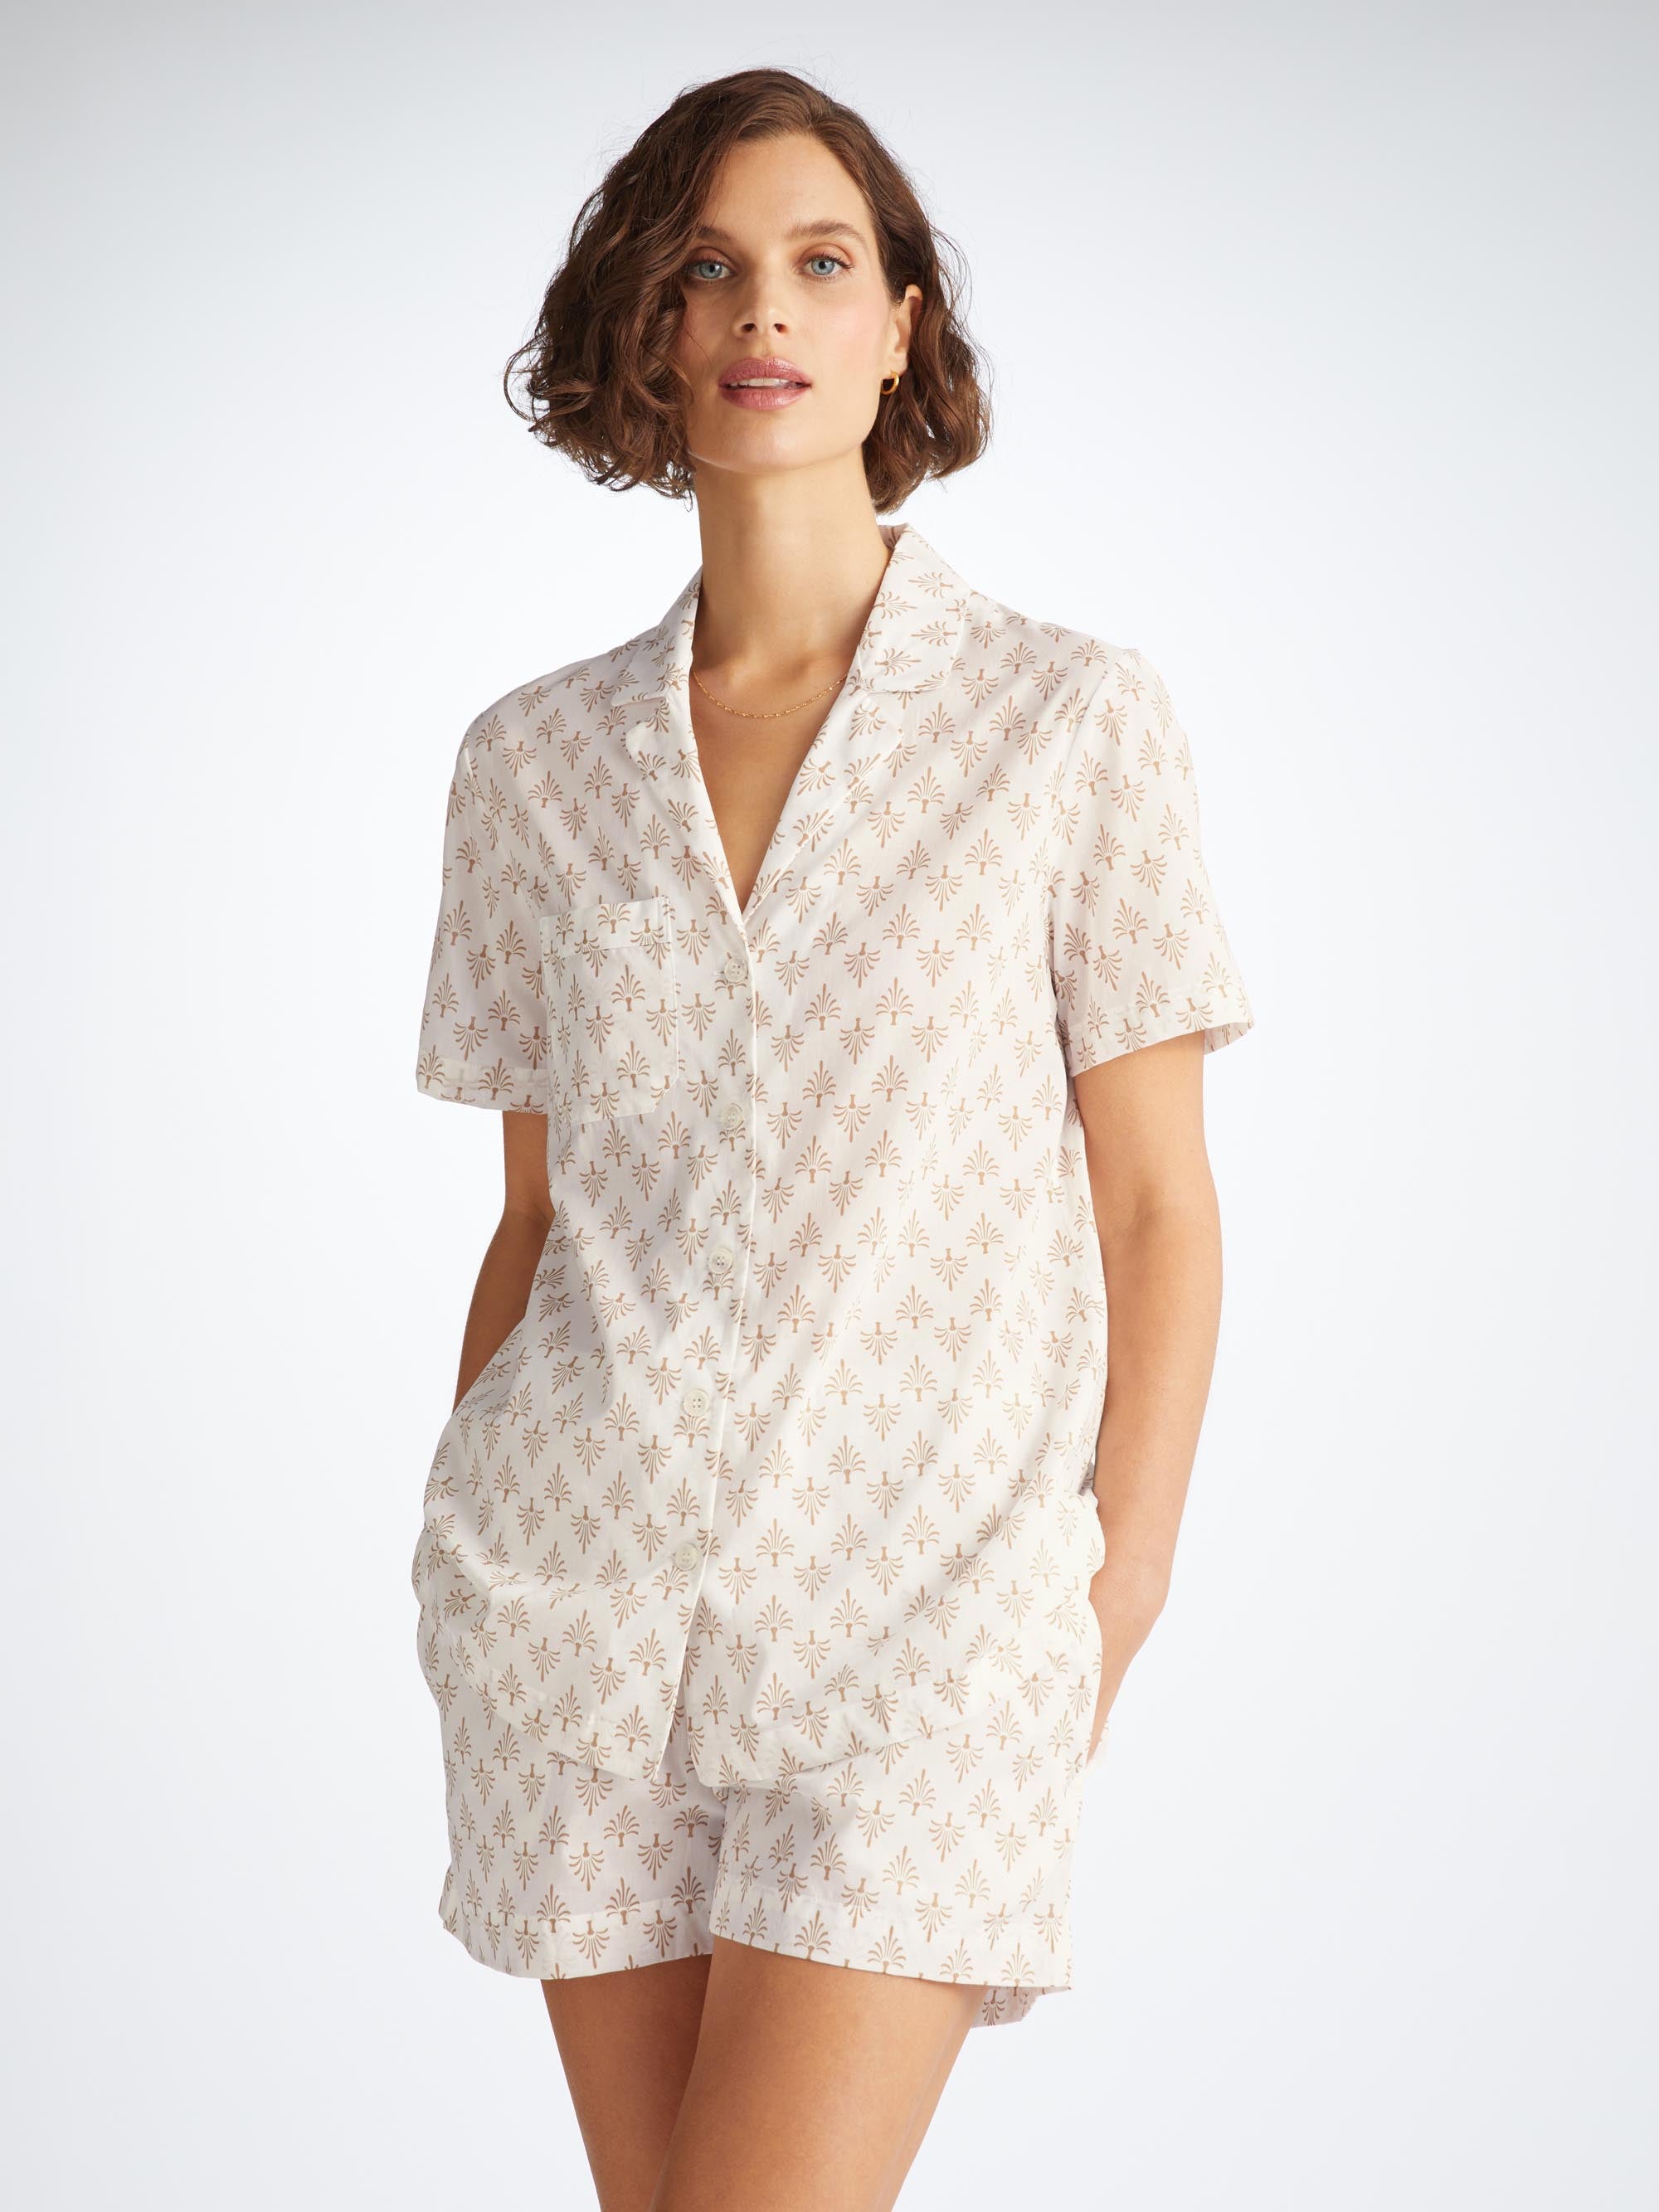 Women's Short Pyjamas Nelson 101 Cotton Batiste White